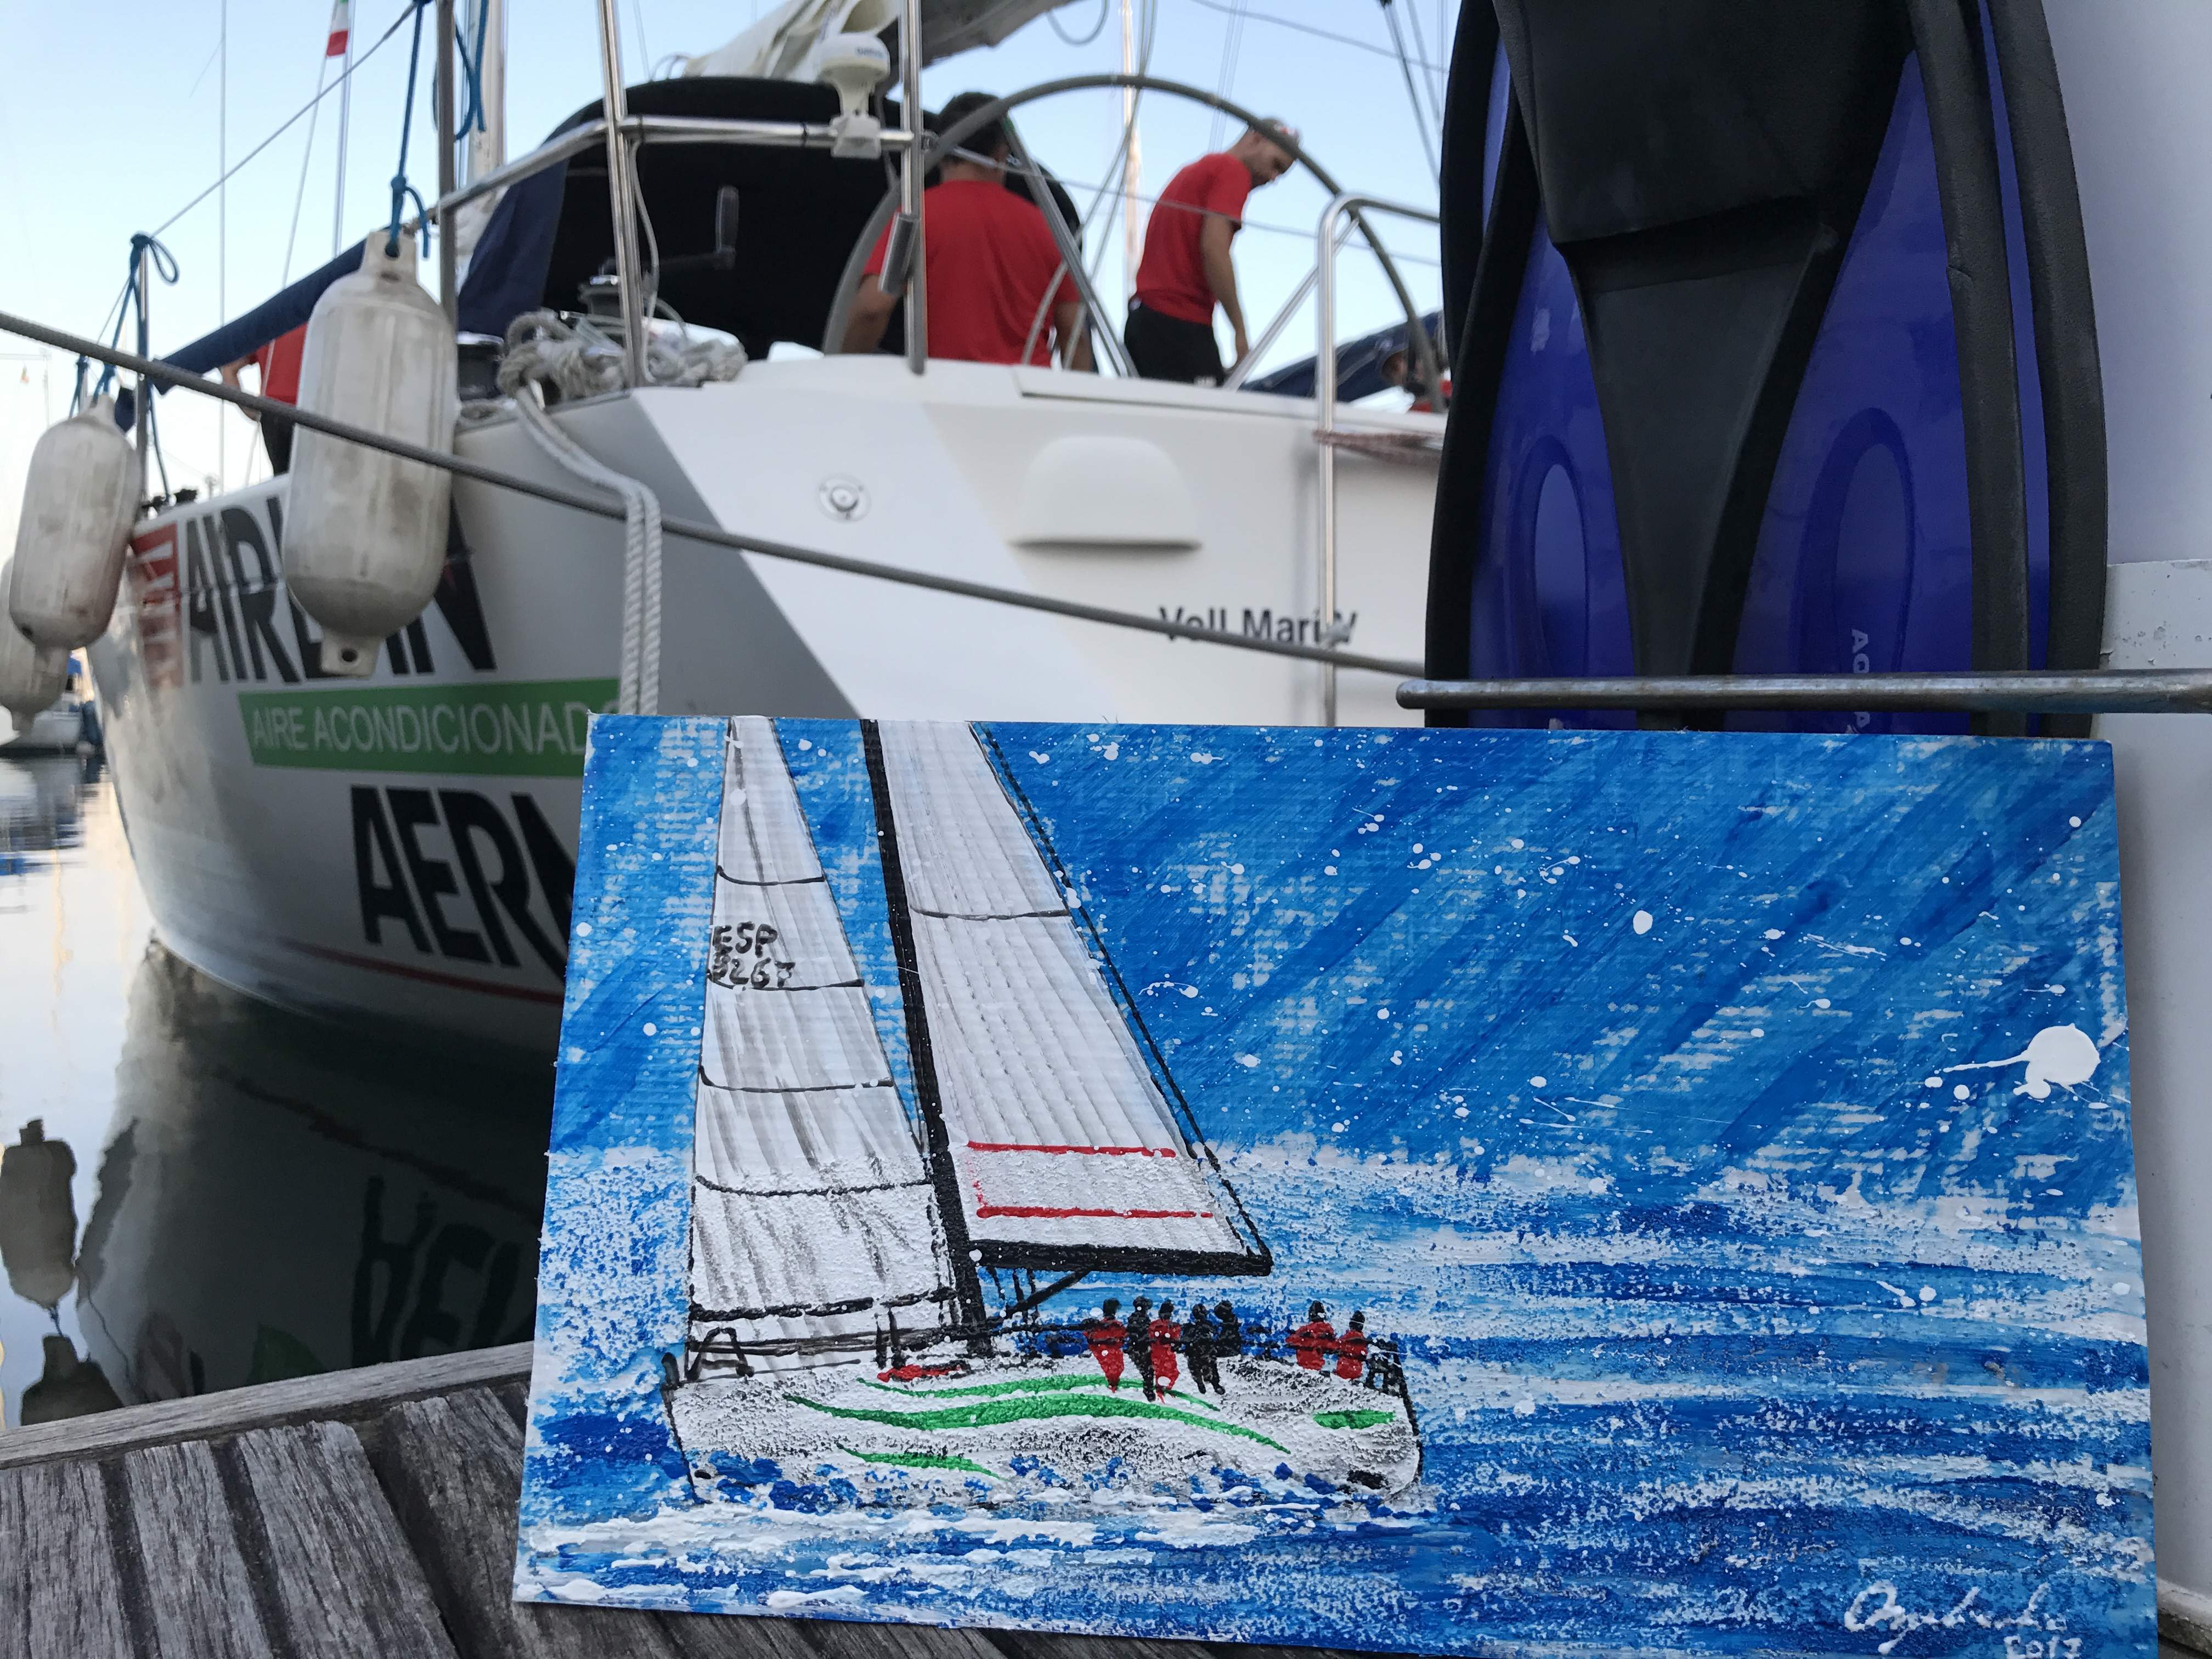 Tecnica mista su vela. Dipinto disponibile, per maggiori informazioni contattare l'artista.